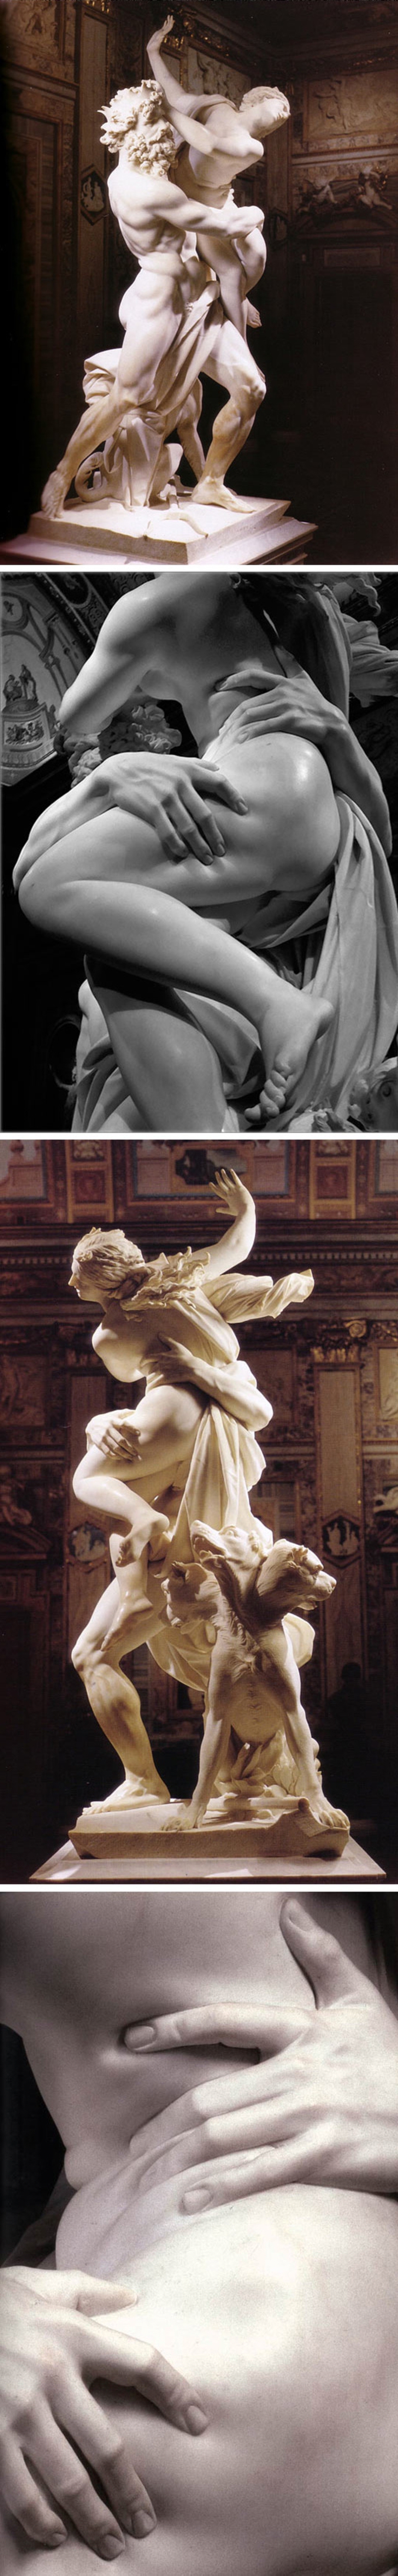 Réalisé par Gian Lorrenzo dit Le Bernin (1598 - 1680), sculpteur, architecte et peintre, à l'âge de 23 ans. 

Surnommé le second Michel-Ange, il peut être qualifié d'« artiste total », dans la mesure où, non seulement il maîtrisait les différents Beaux Arts (Architecture, Peinture et Sculpture), mais aussi parce qu'il était capable de les faire concourir au sein d'une même œuvre.